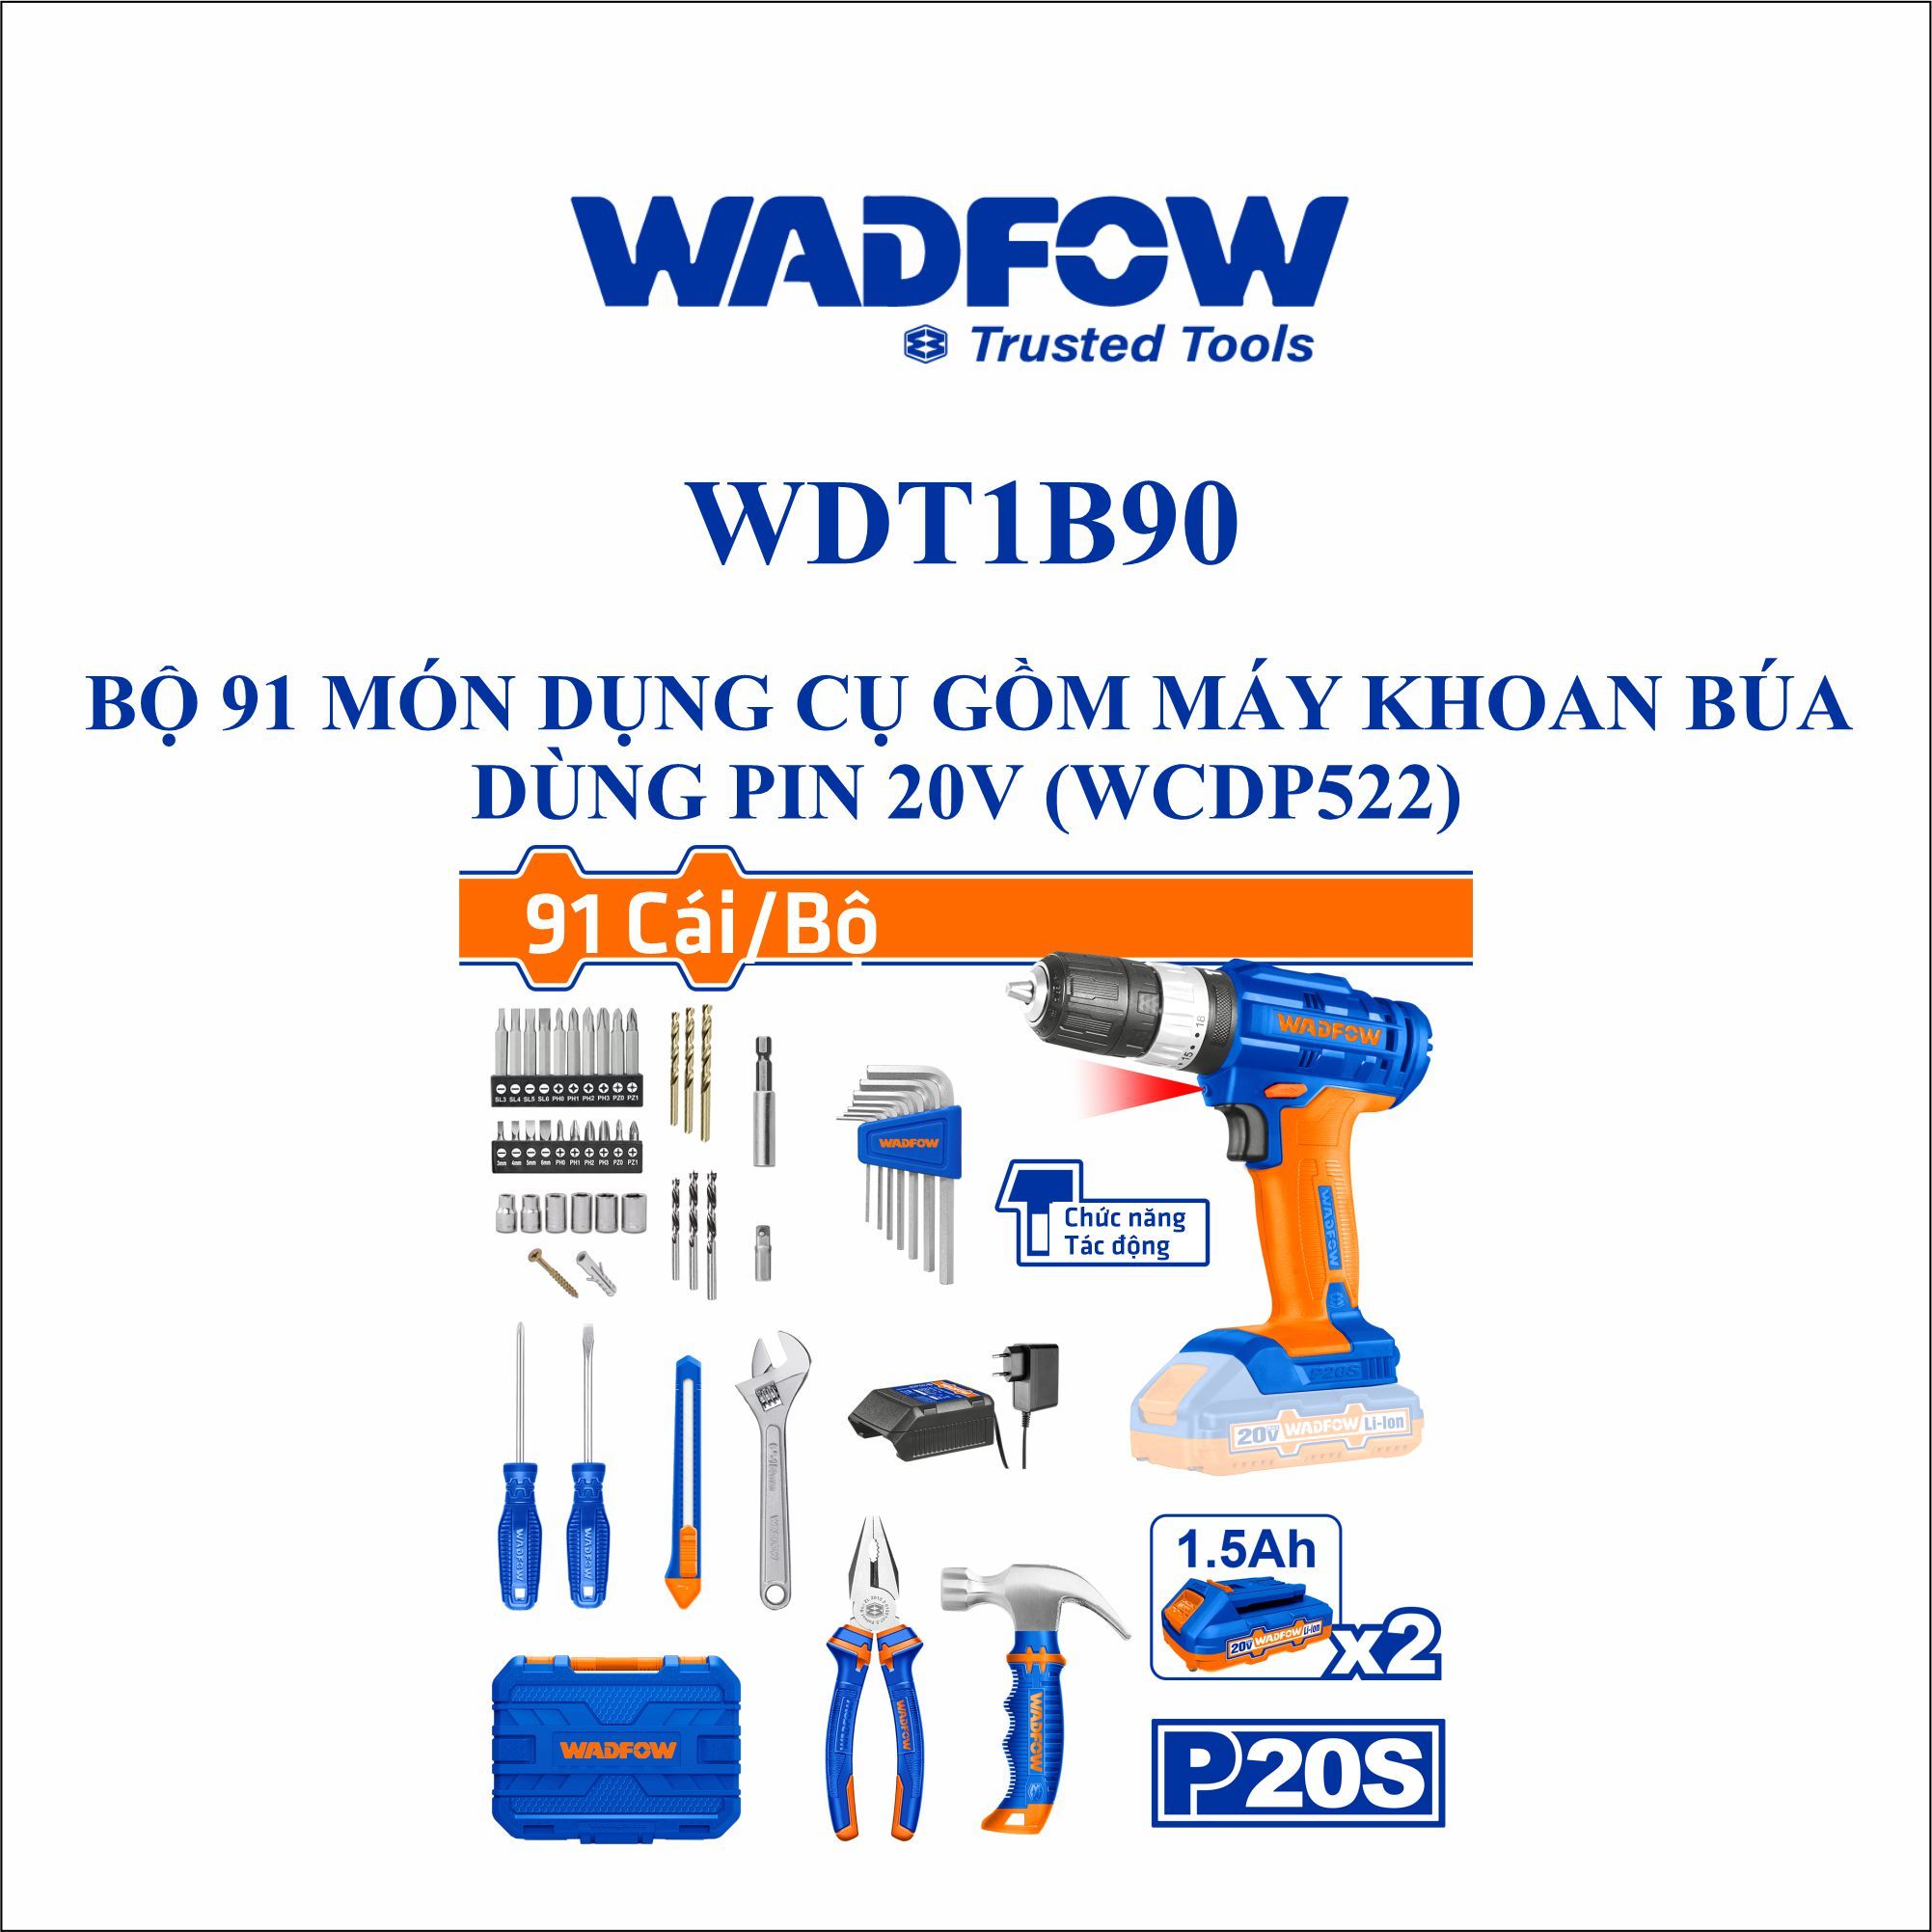  Bộ 91 món dụng cụ gồm máy khoan búa dùng pin 20V WADFOW WDT1B90 